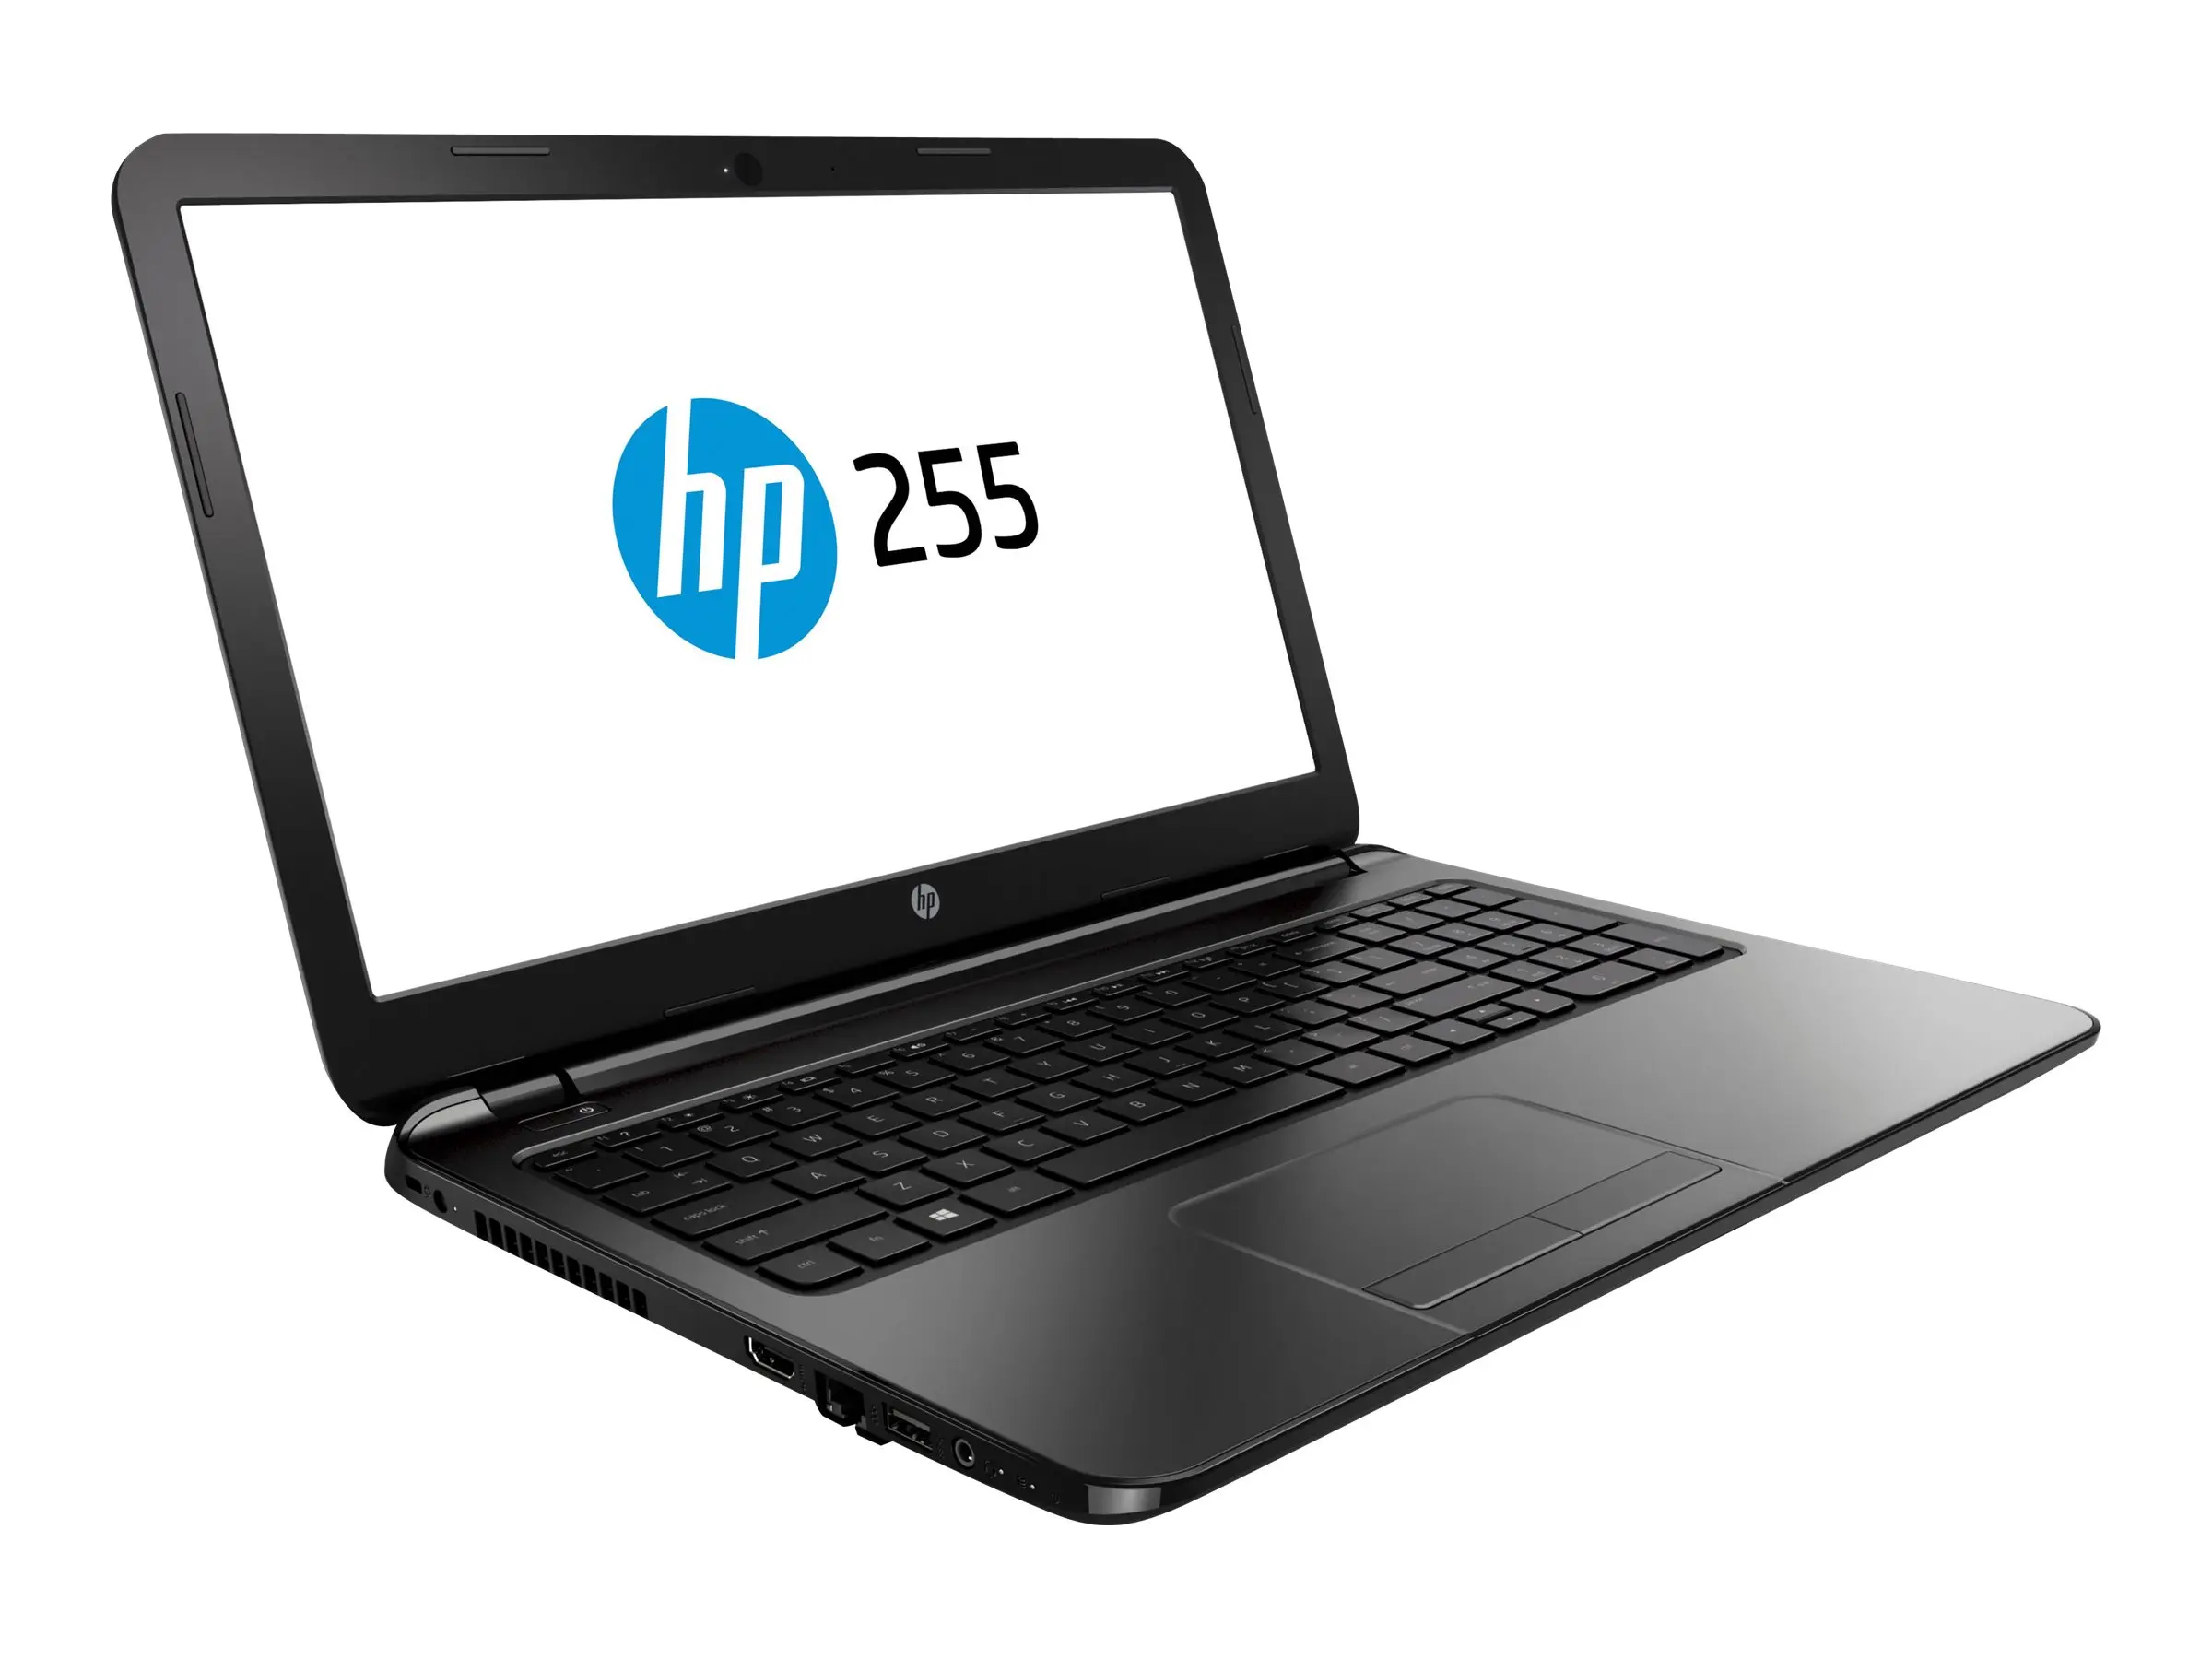 hewlett packard hp 255 g3 notebook pc - What core is HP 255 G7 notebook PC